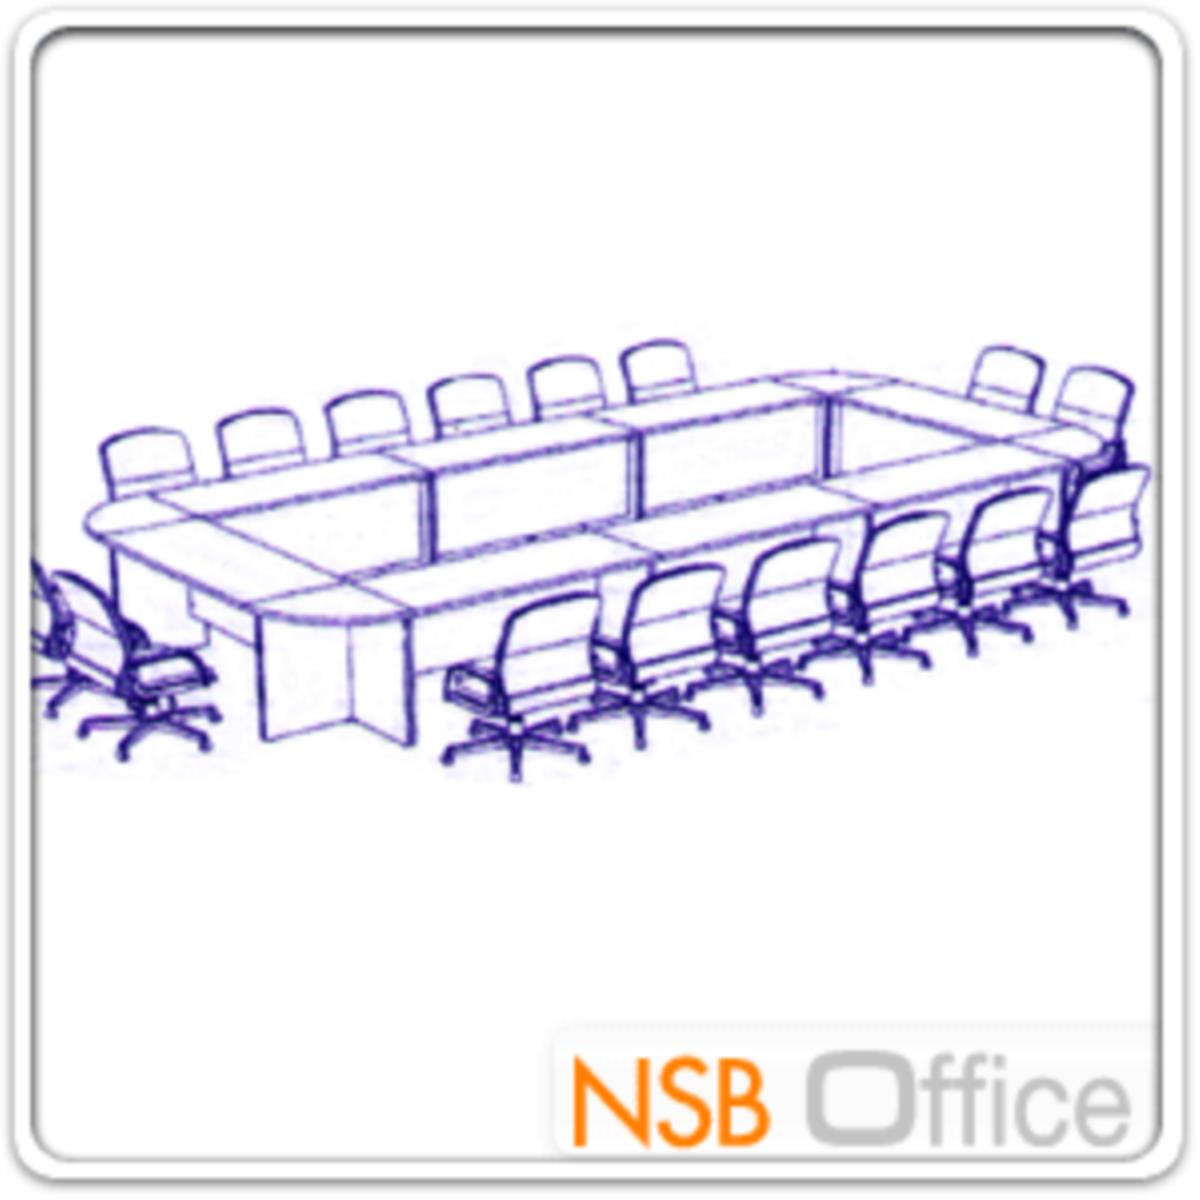 โต๊ะประชุมหัวโค้ง 24 ที่นั่ง รุ่น Academy ขนาดรวม 570W cm. สีเชอร์รี่ดำ